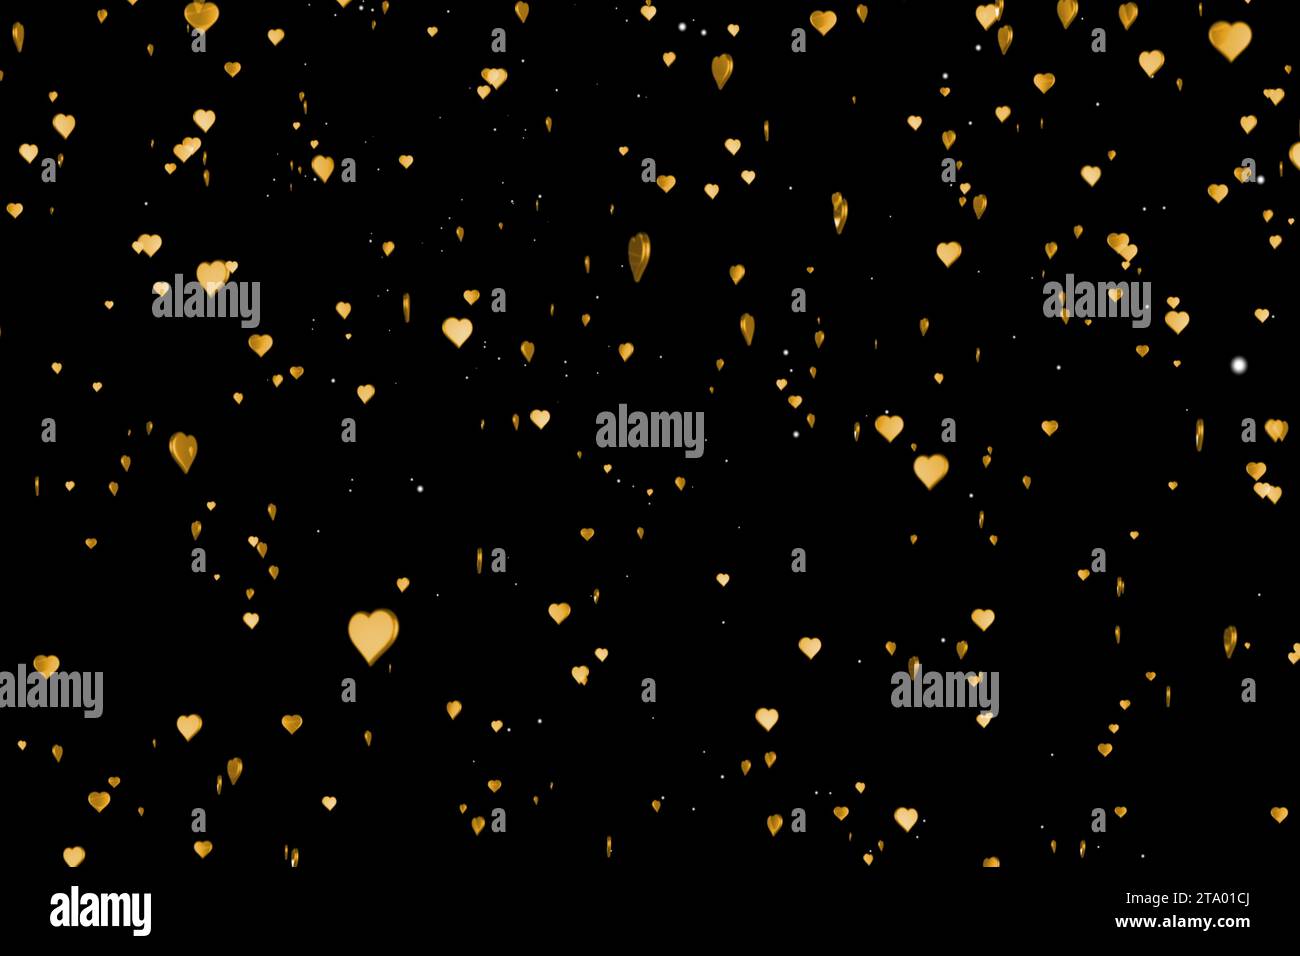 il cuore dorato di san valentino si forma come il movimento delle bolle dorate di champagne con effetto crespo su sfondo nero con il canale alfa opaco, il concetto di amore per san valentino per le festività natalizie Foto Stock